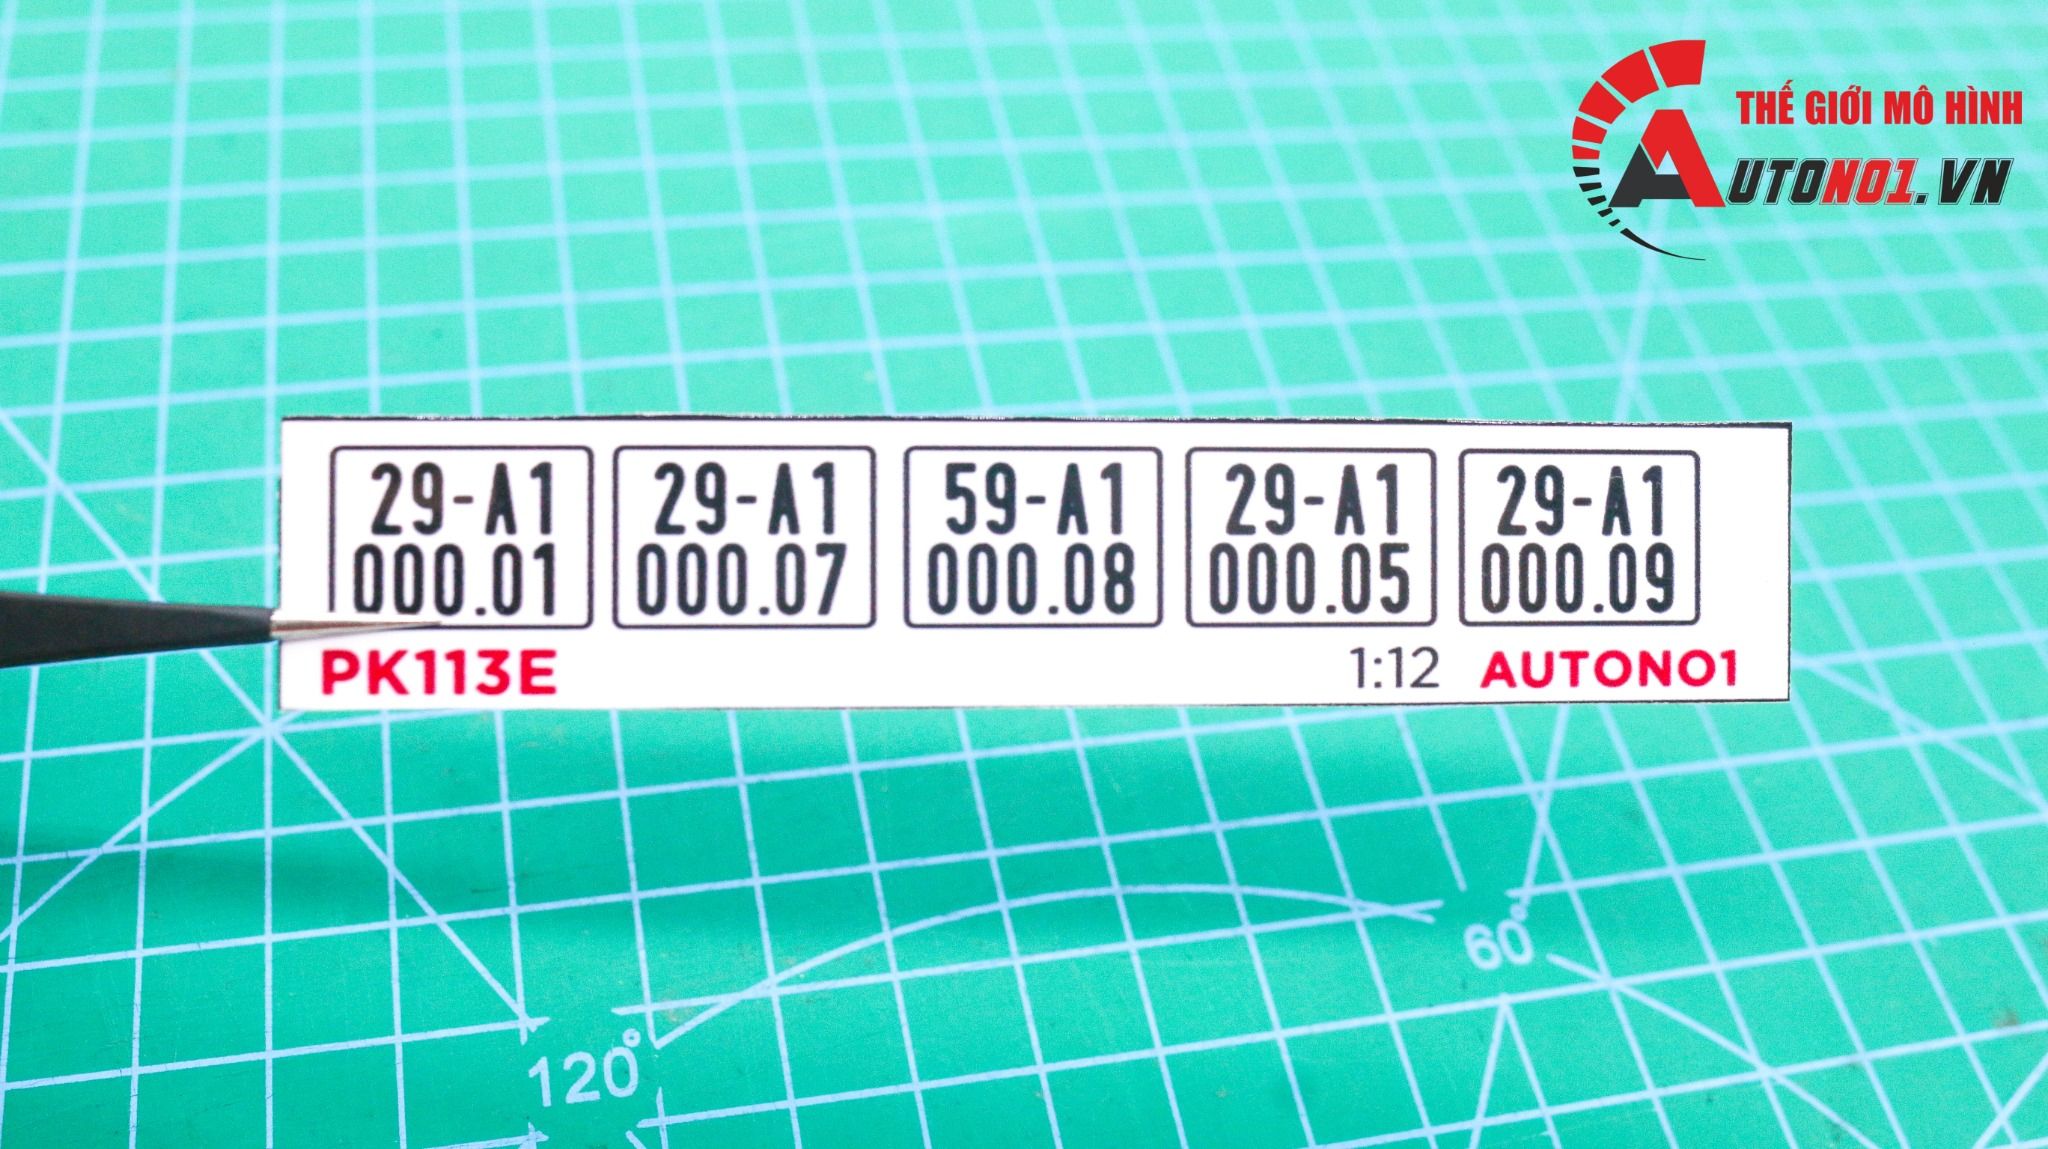  Phụ kiện 5 biển số xe mô hình tỉ lệ 1:12 ép plastic Autono1 Hà Nội PK113 